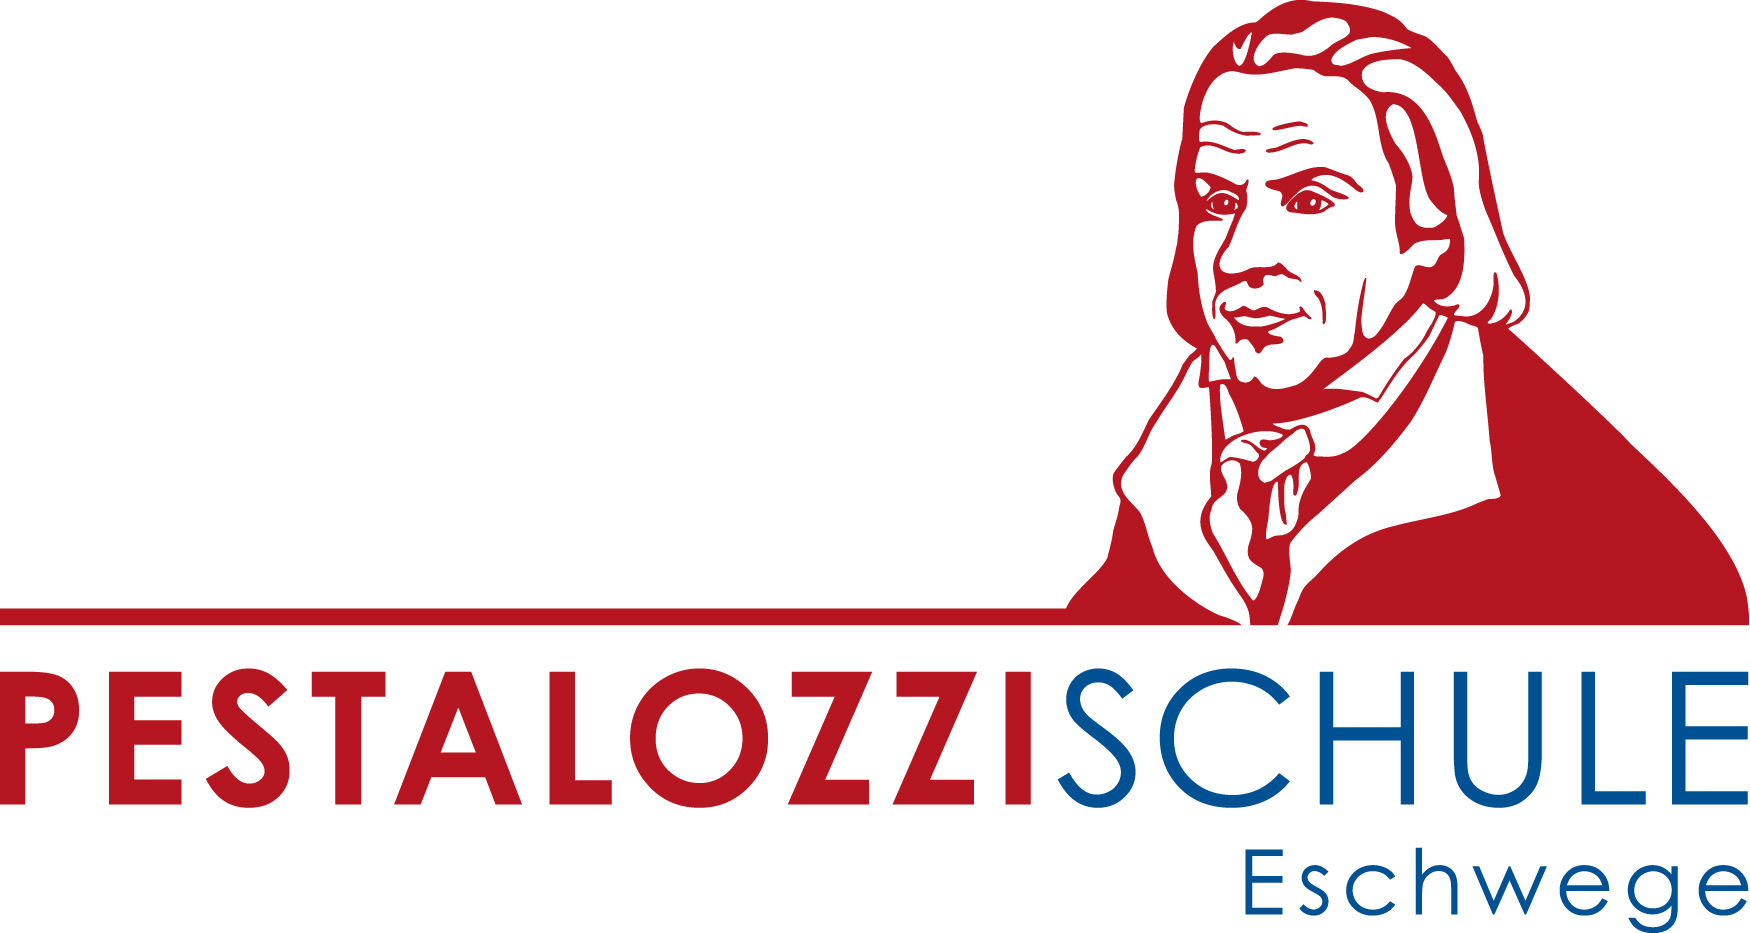 Pestalozzischule Eschwege